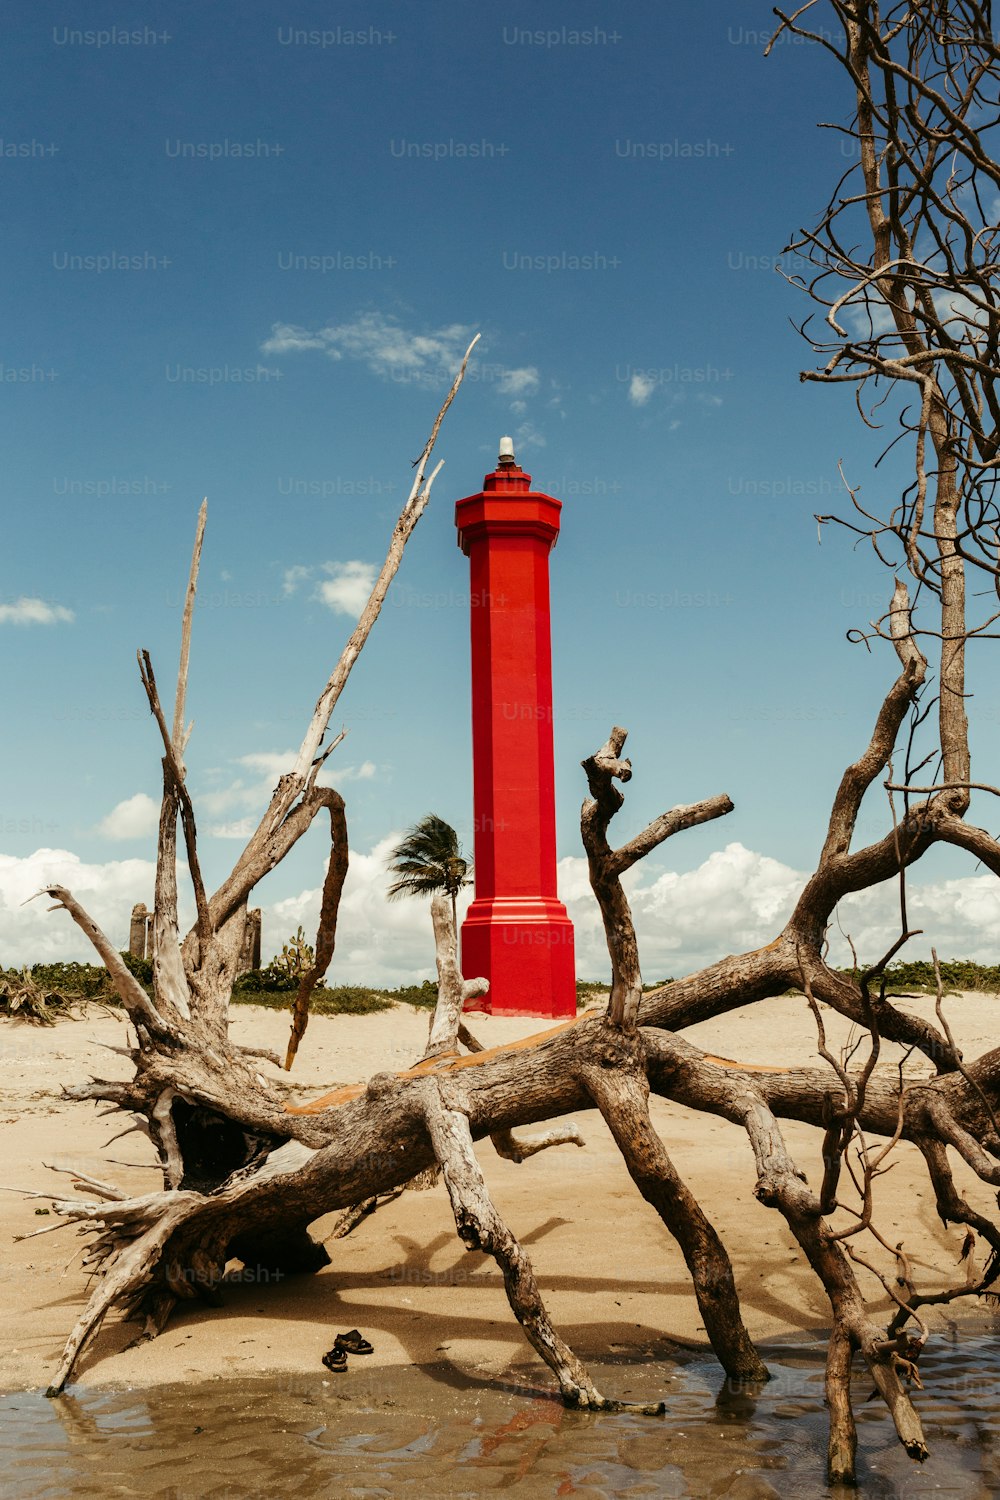 Ein roter Leuchtturm an einem Sandstrand neben toten Bäumen